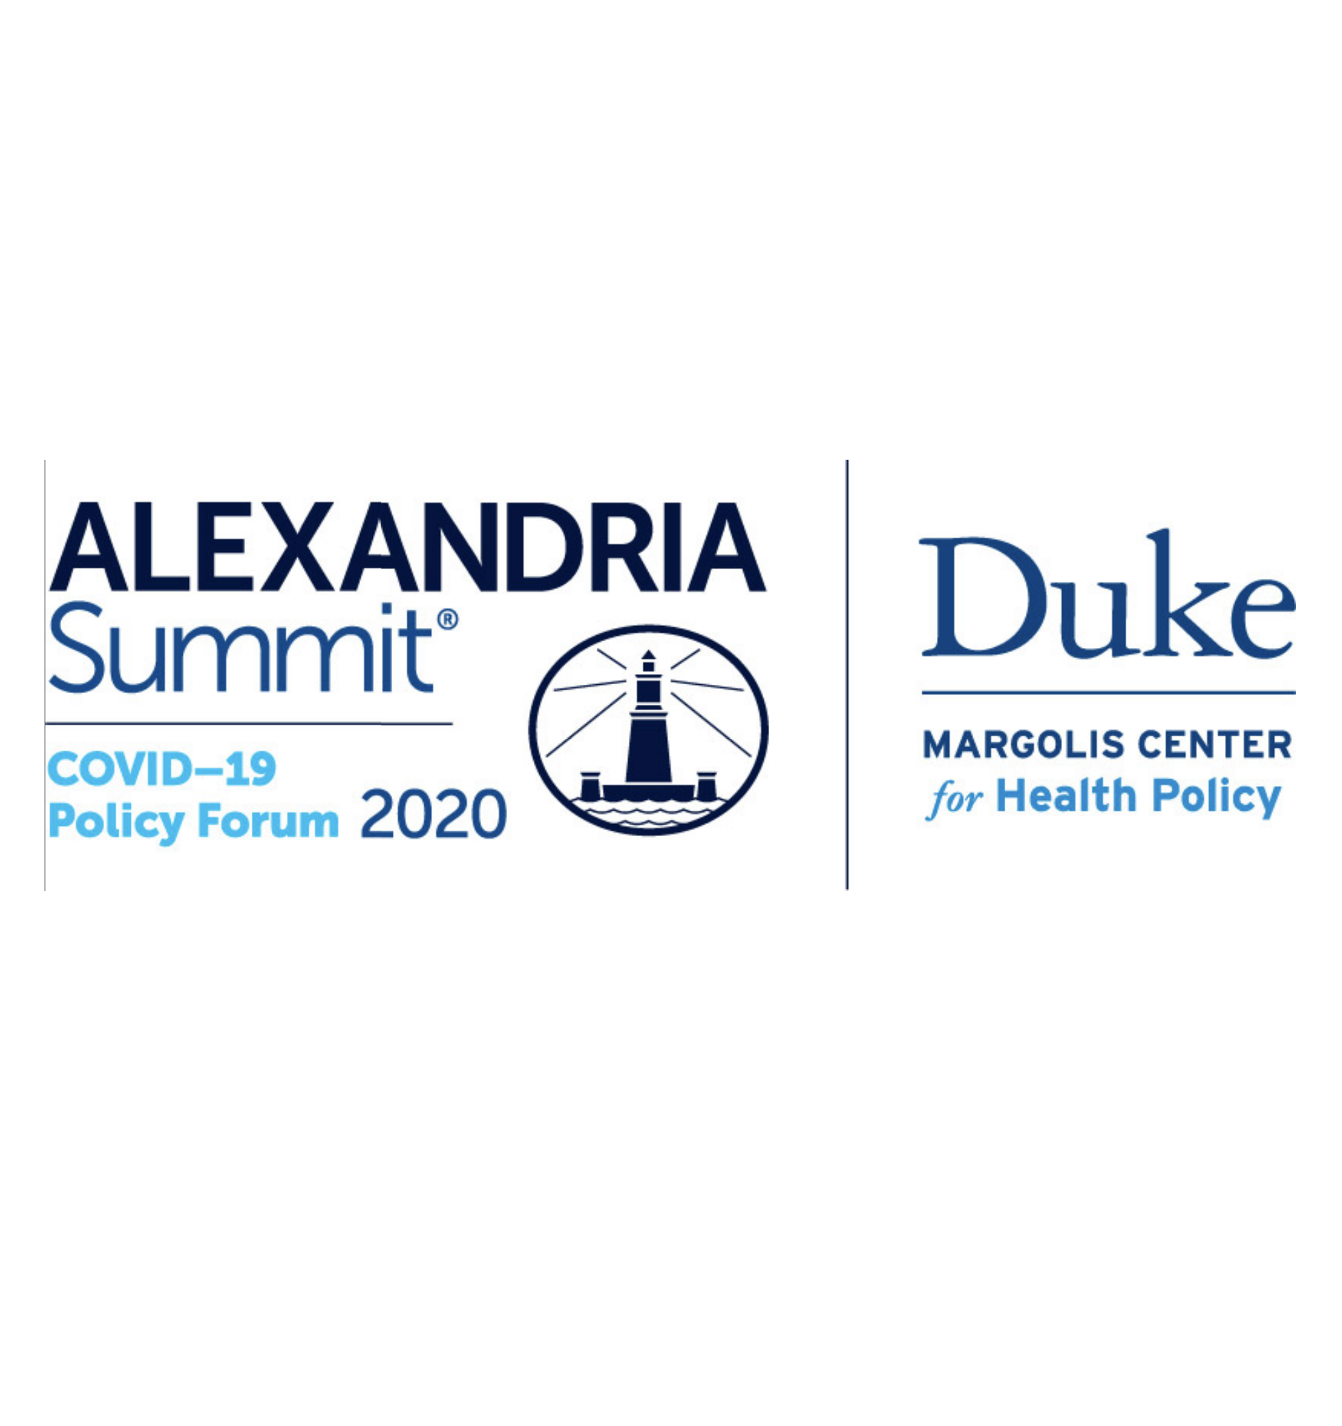 Duke-Margolis/Alexandria Summit Webinar Logo